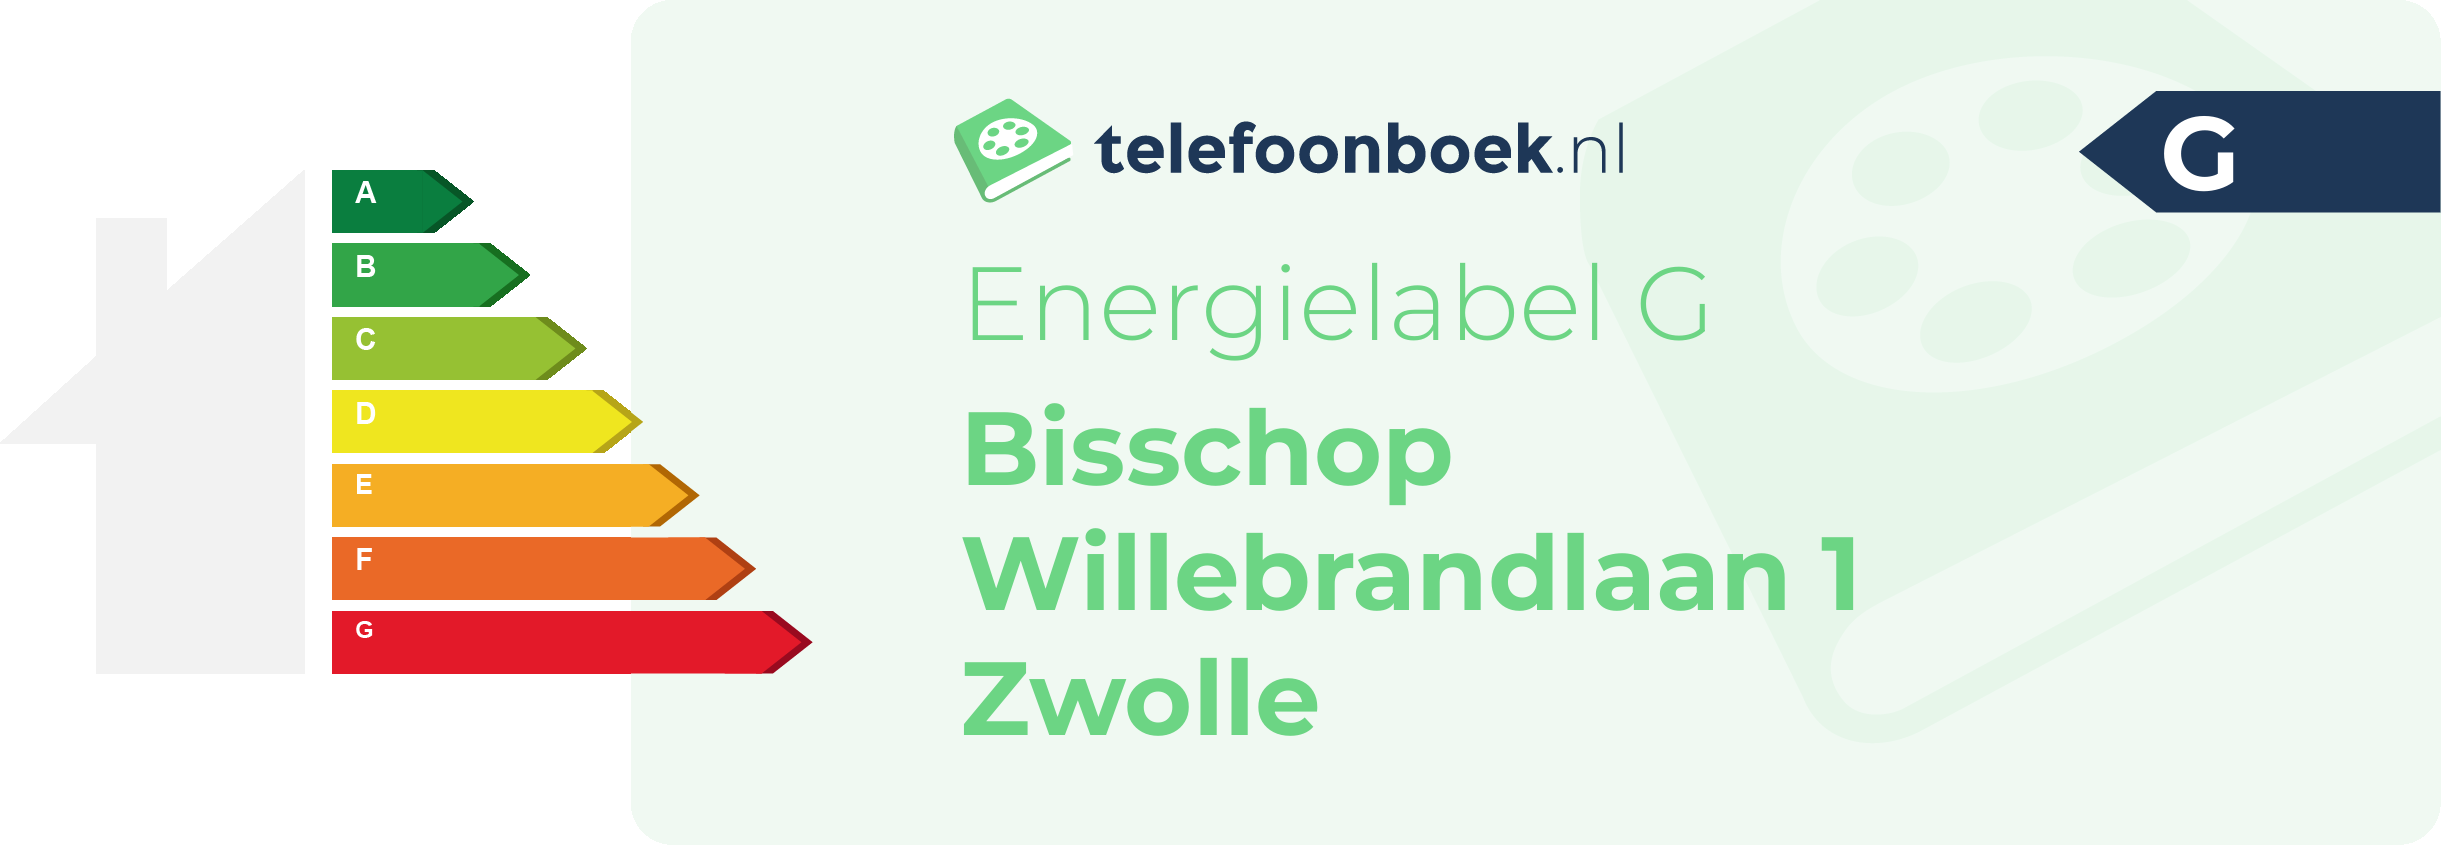 Energielabel Bisschop Willebrandlaan 1 Zwolle